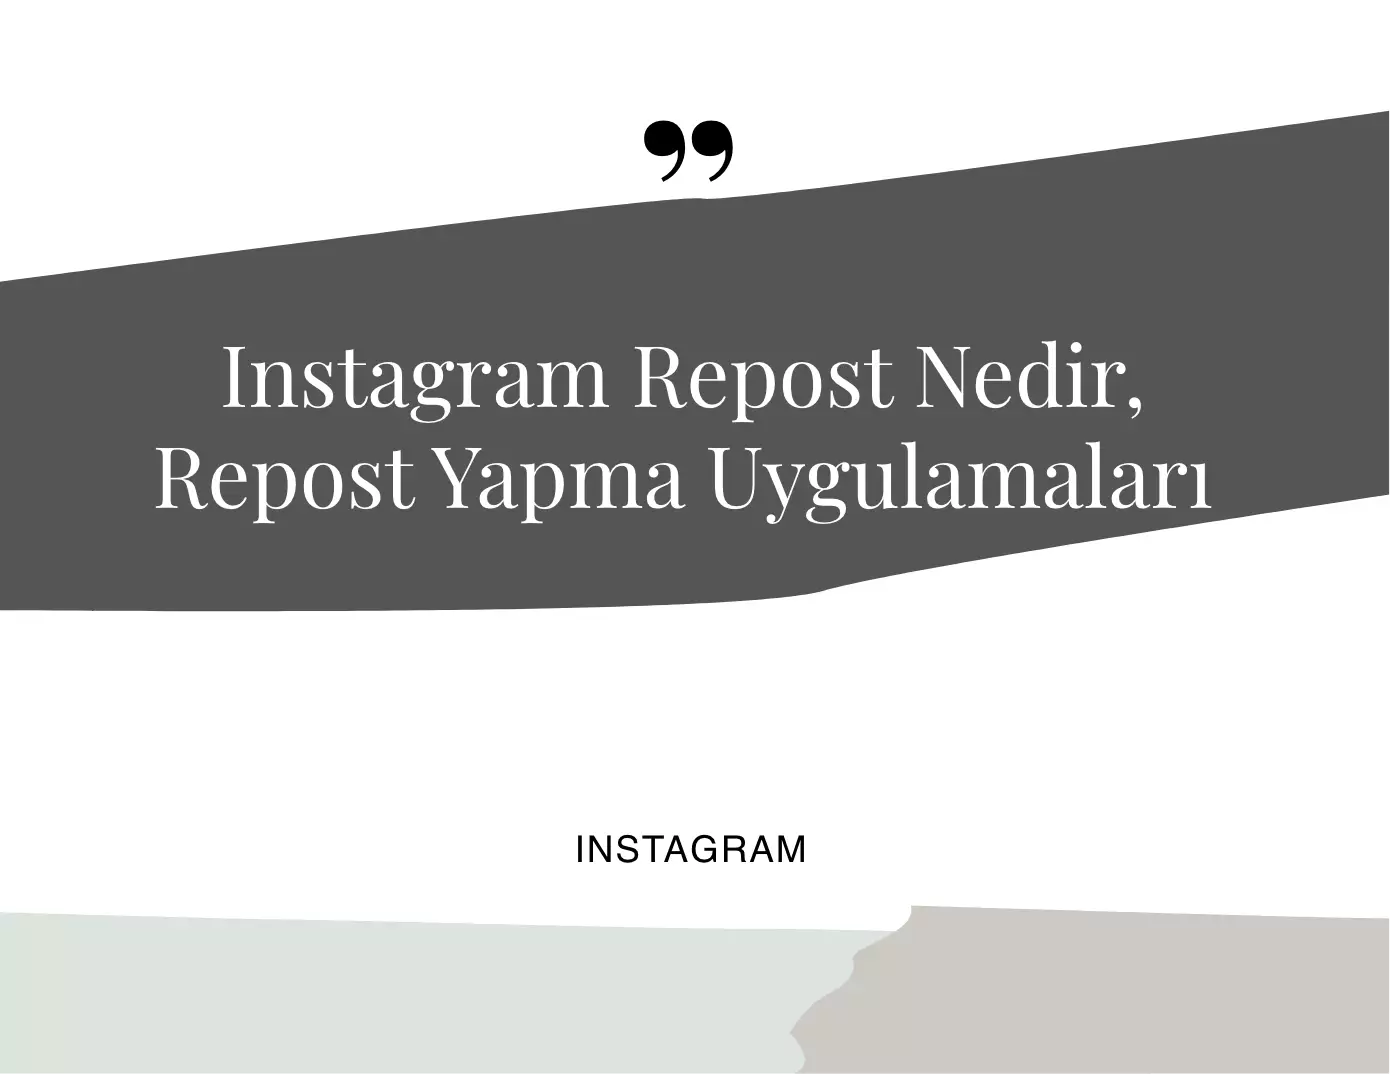 Instagram Repost Nedir, Repost Yapma Uygulamaları